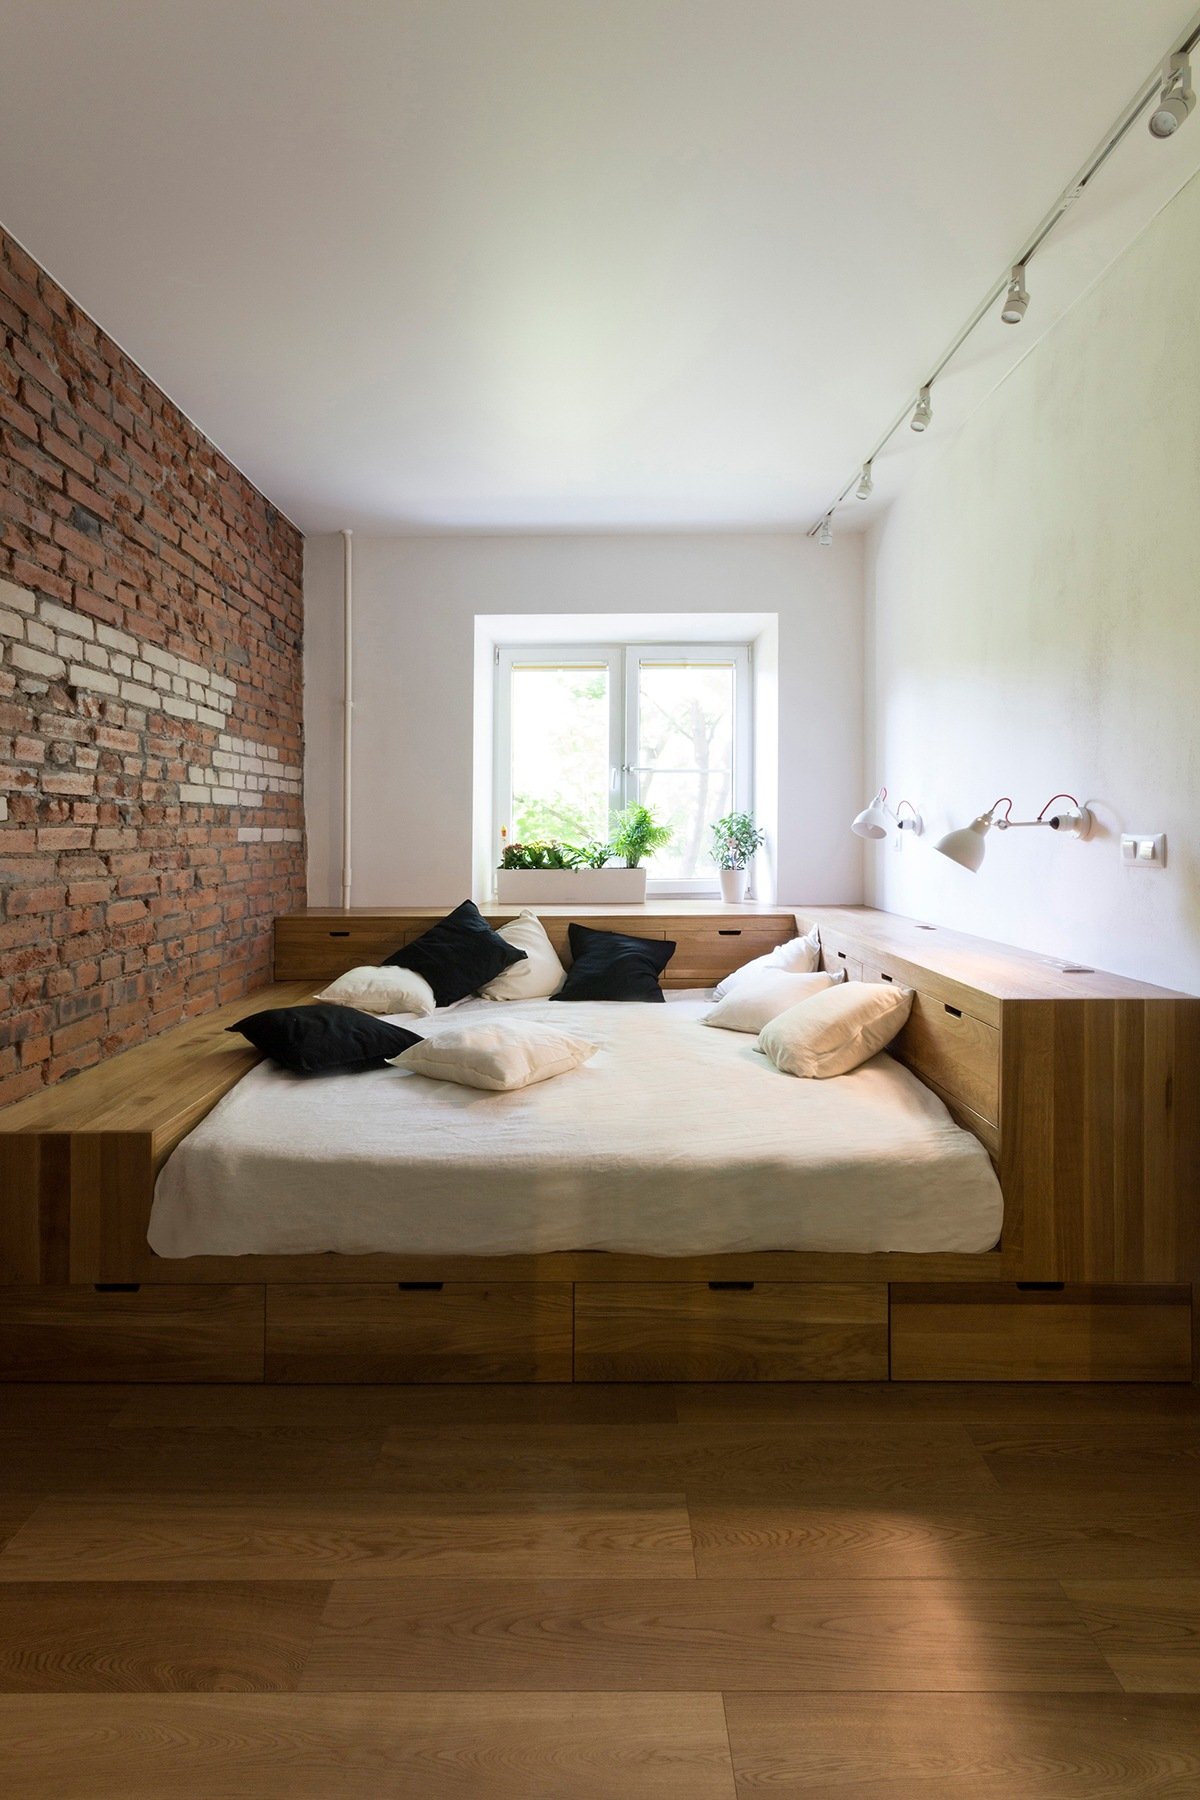 Khối giường bằng gỗ tích hợp ngăn kéo lưu trữ gọn đẹp. Các bề mặt xung quanh đảm nhiệm vai trò bàn phấn, bàn làm việc tiện dụng.